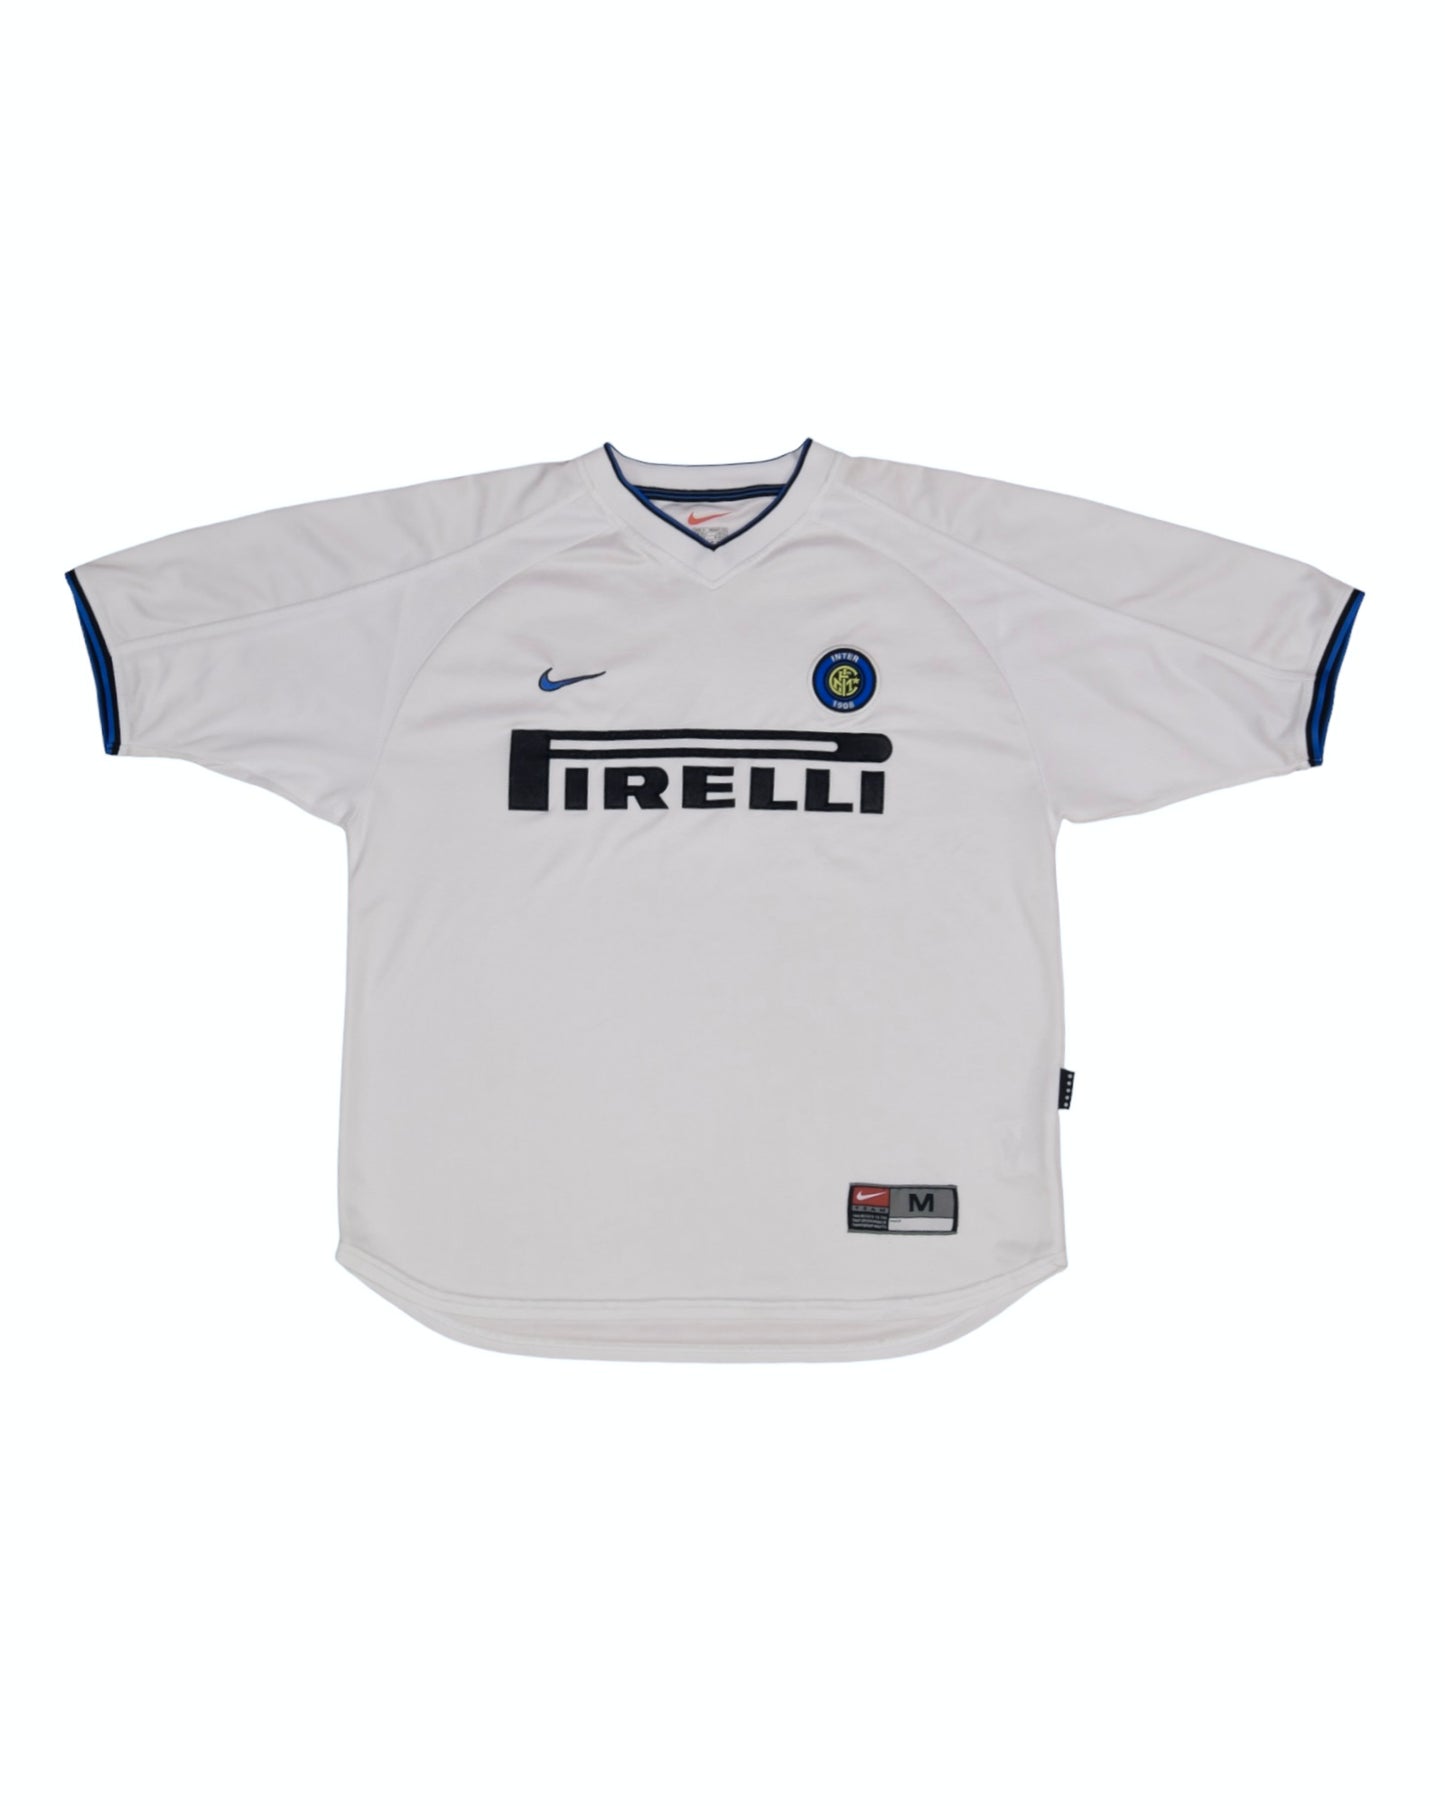 Inter Internazionale Milano Milan Nike 1999 - 2000 Away Football Shirt White Pirelli Size M Made in UK